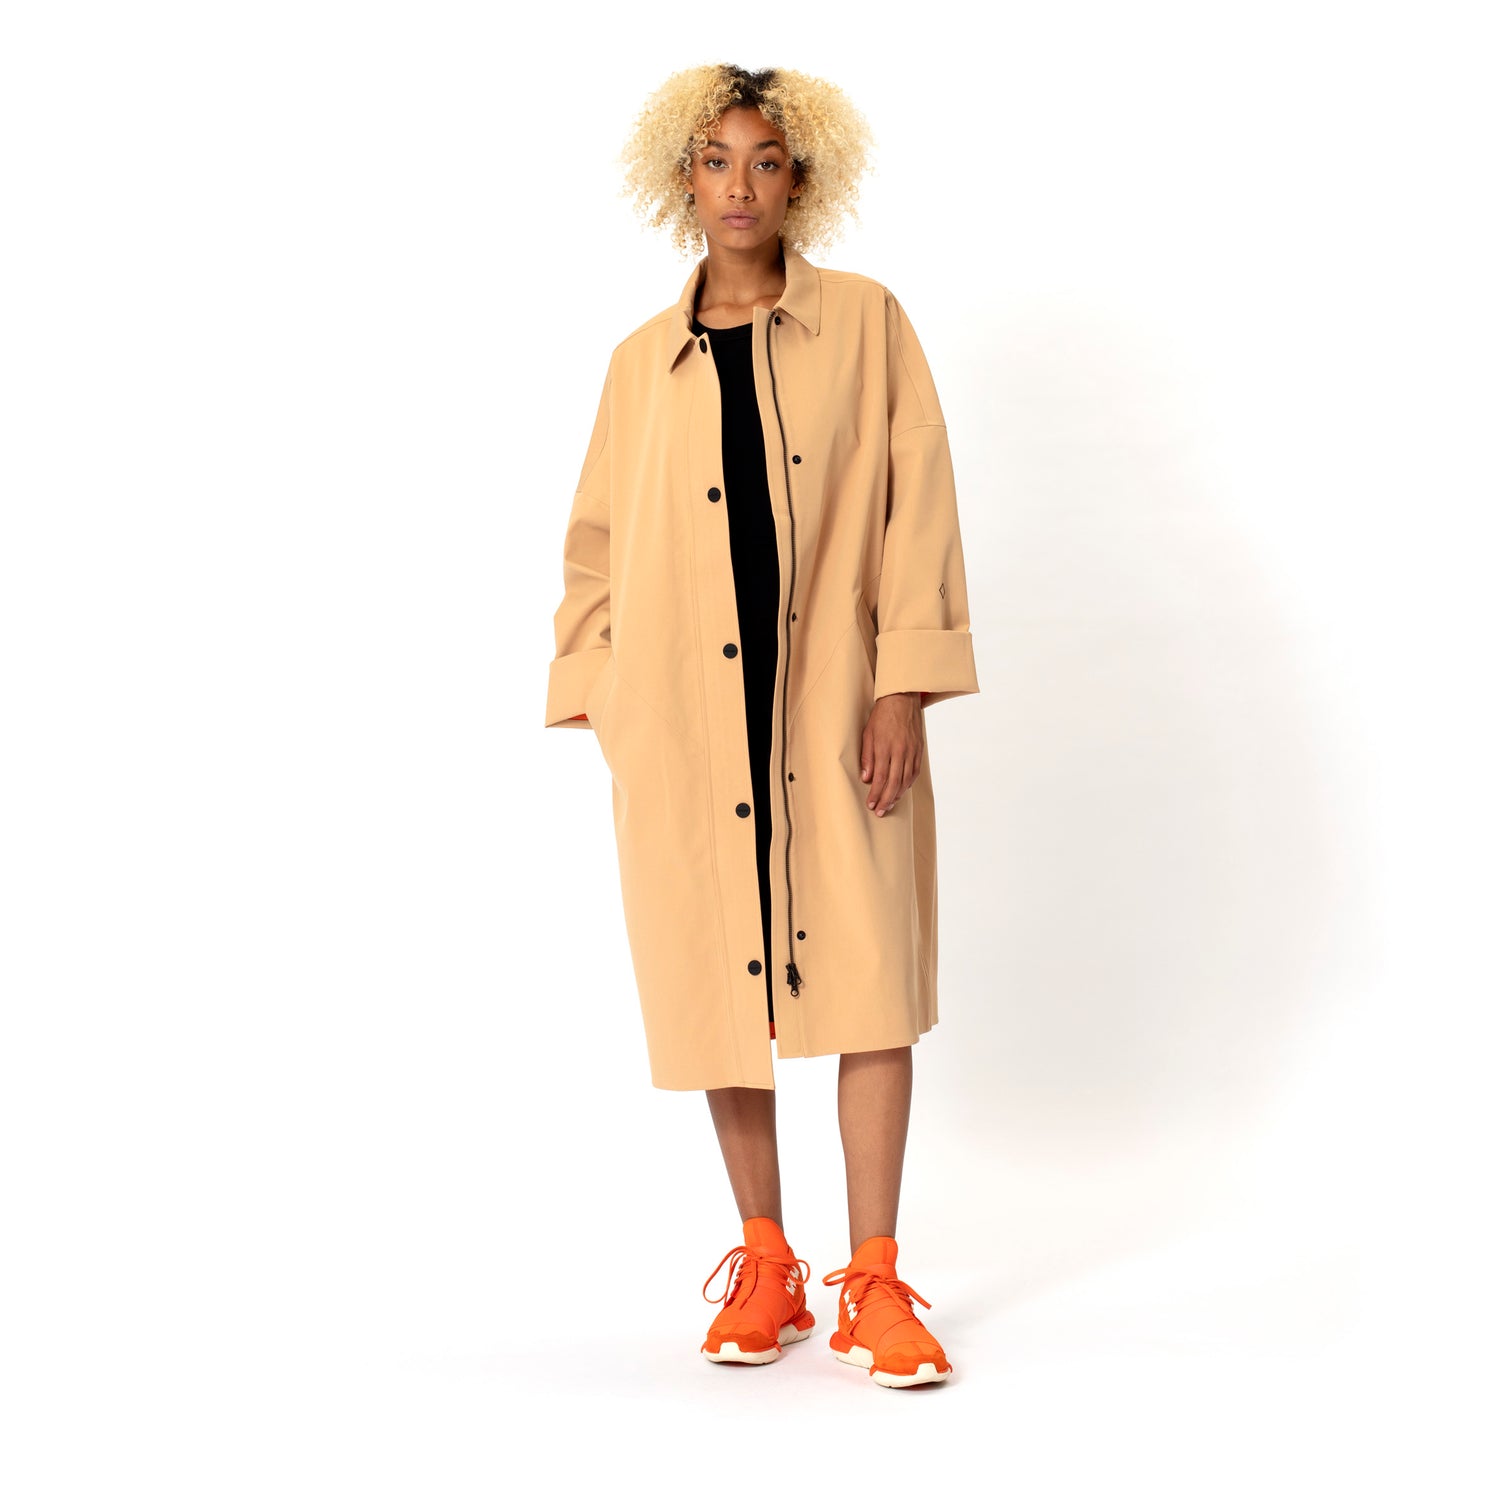 GOFRANCK-THE-DRY-Product-Image-women-rainjacket